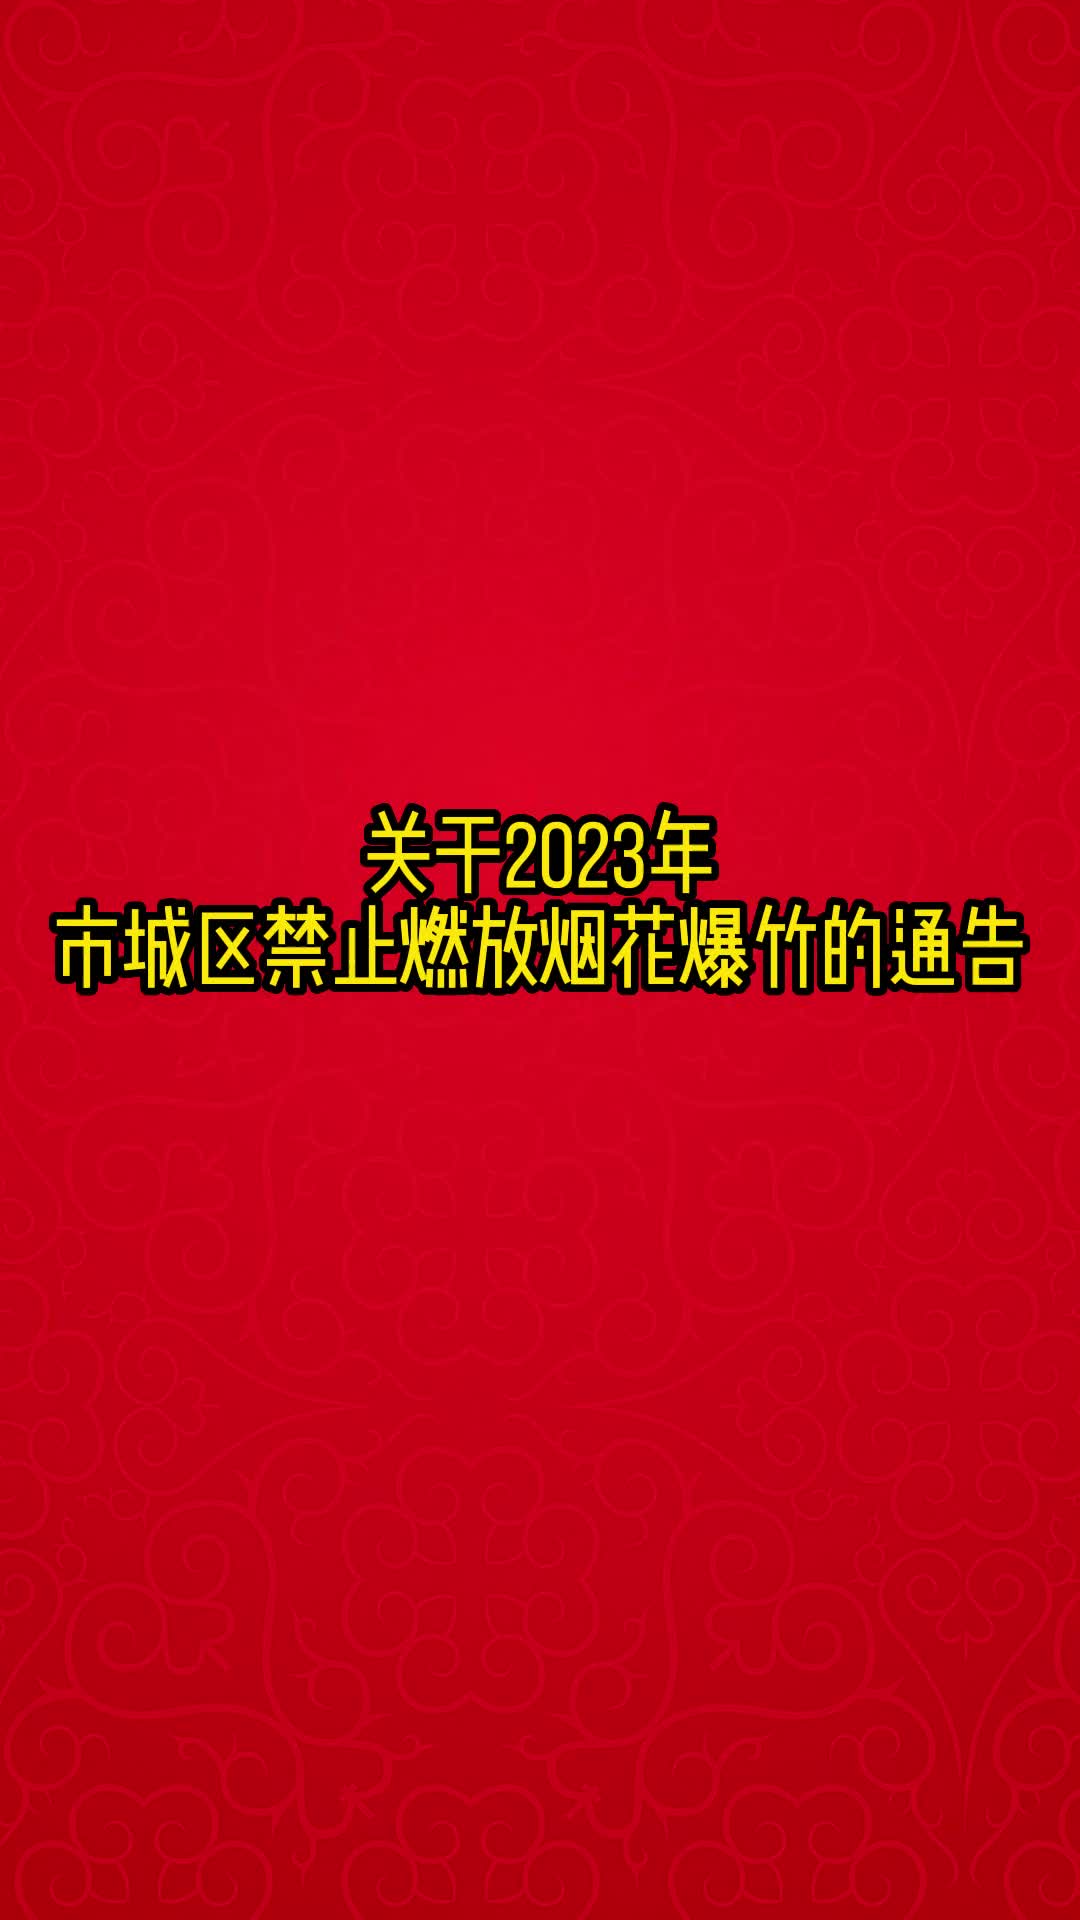 视频丨关于2023年湘潭市城区禁止燃放烟花爆竹的通告